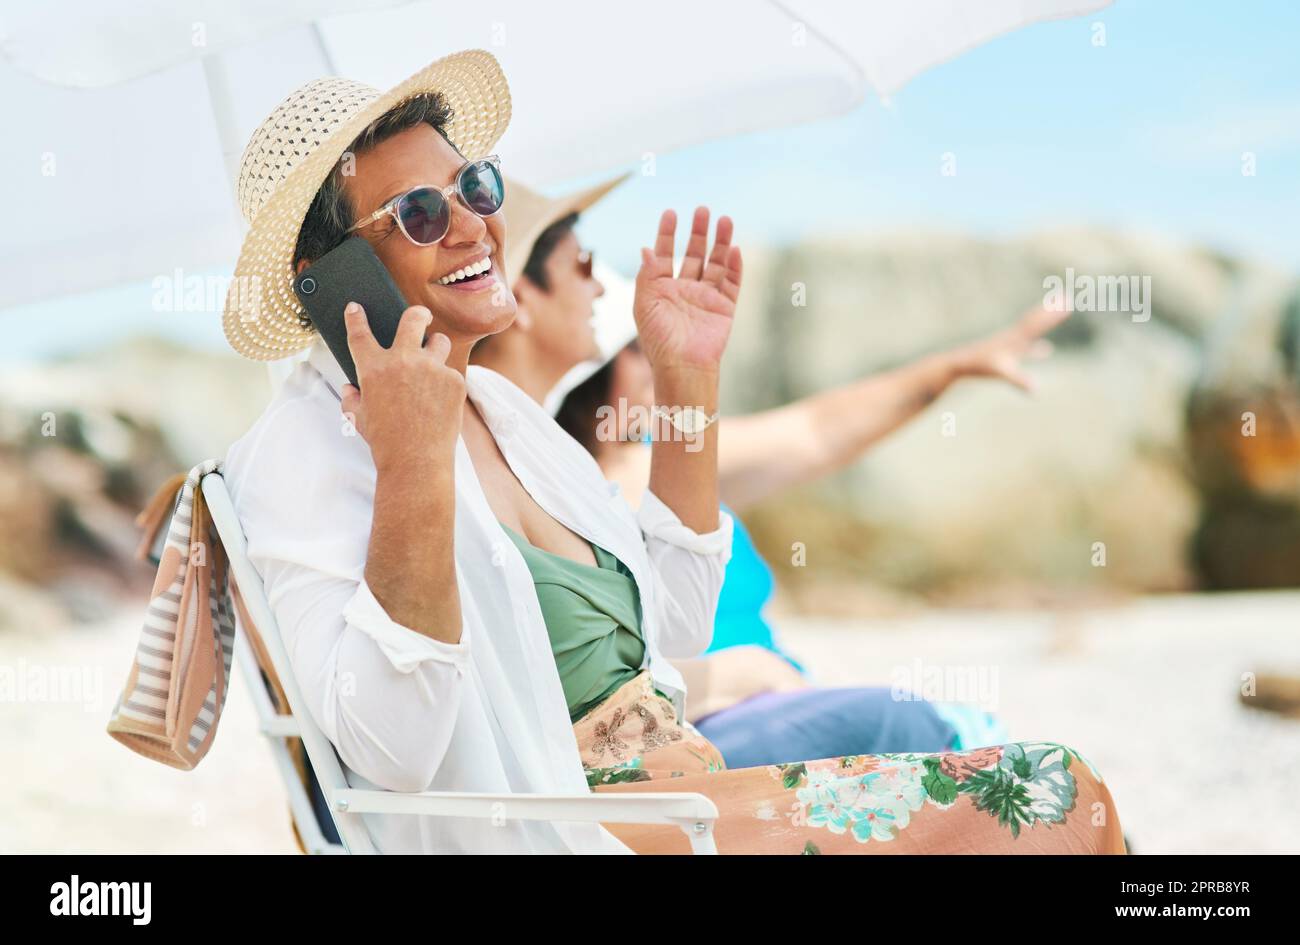 Abbiamo fatto la giornata migliore qui fuori: Una donna matura seduta da sola e con gli amici che usavano il cellulare durante una giornata in spiaggia. Foto Stock